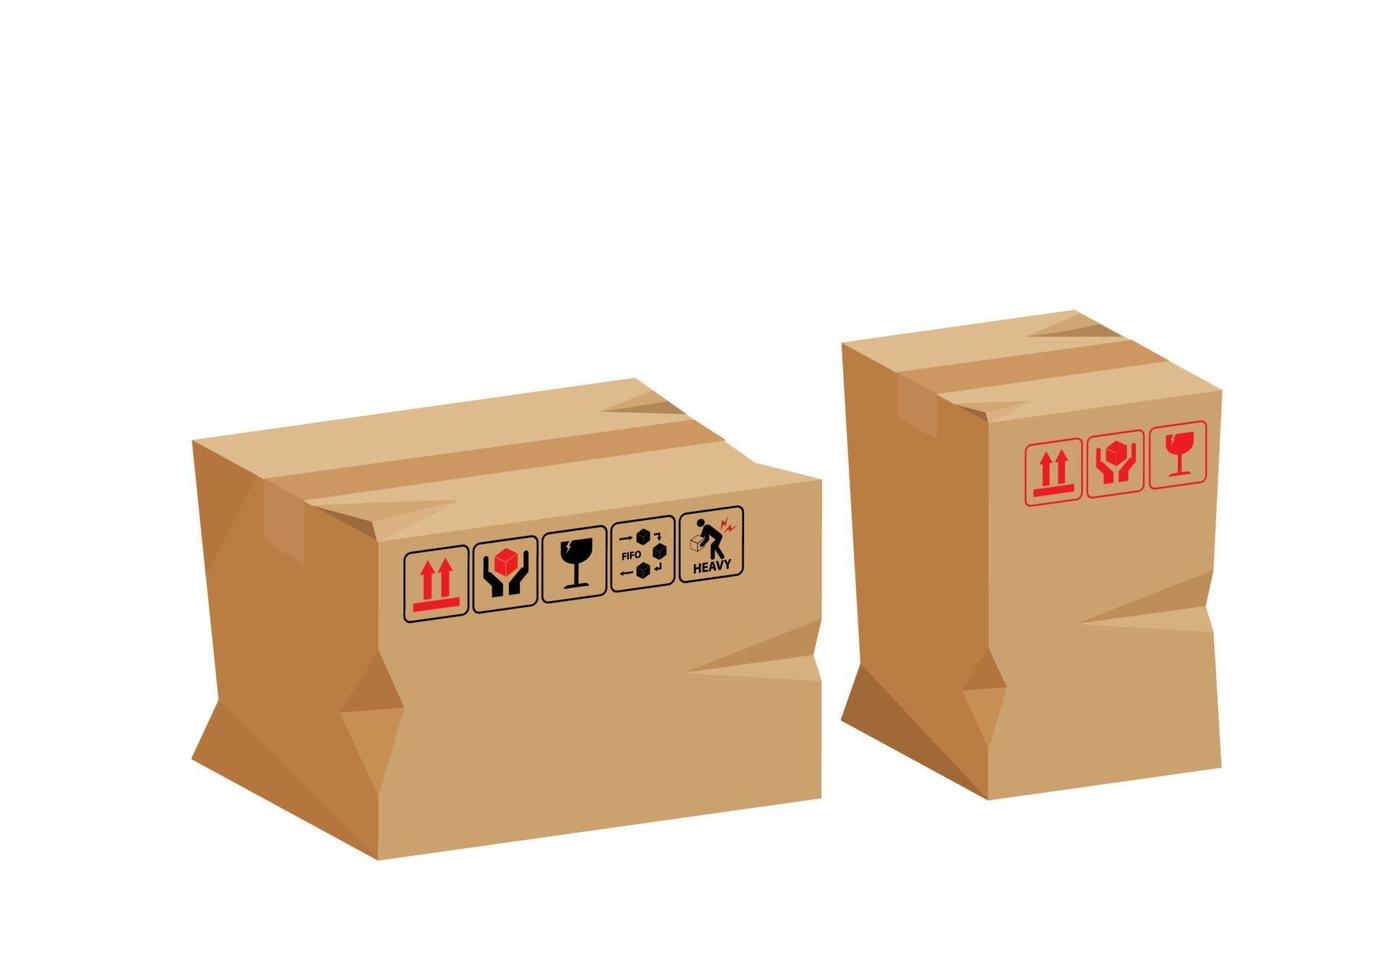 caja de cartón dañada en 3d. caja de cartón marrón rota. caja de cartón para paquetes. mercancías embaladas. aislado sobre fondo blanco. vector de ilustración de dibujos animados de estilo plano